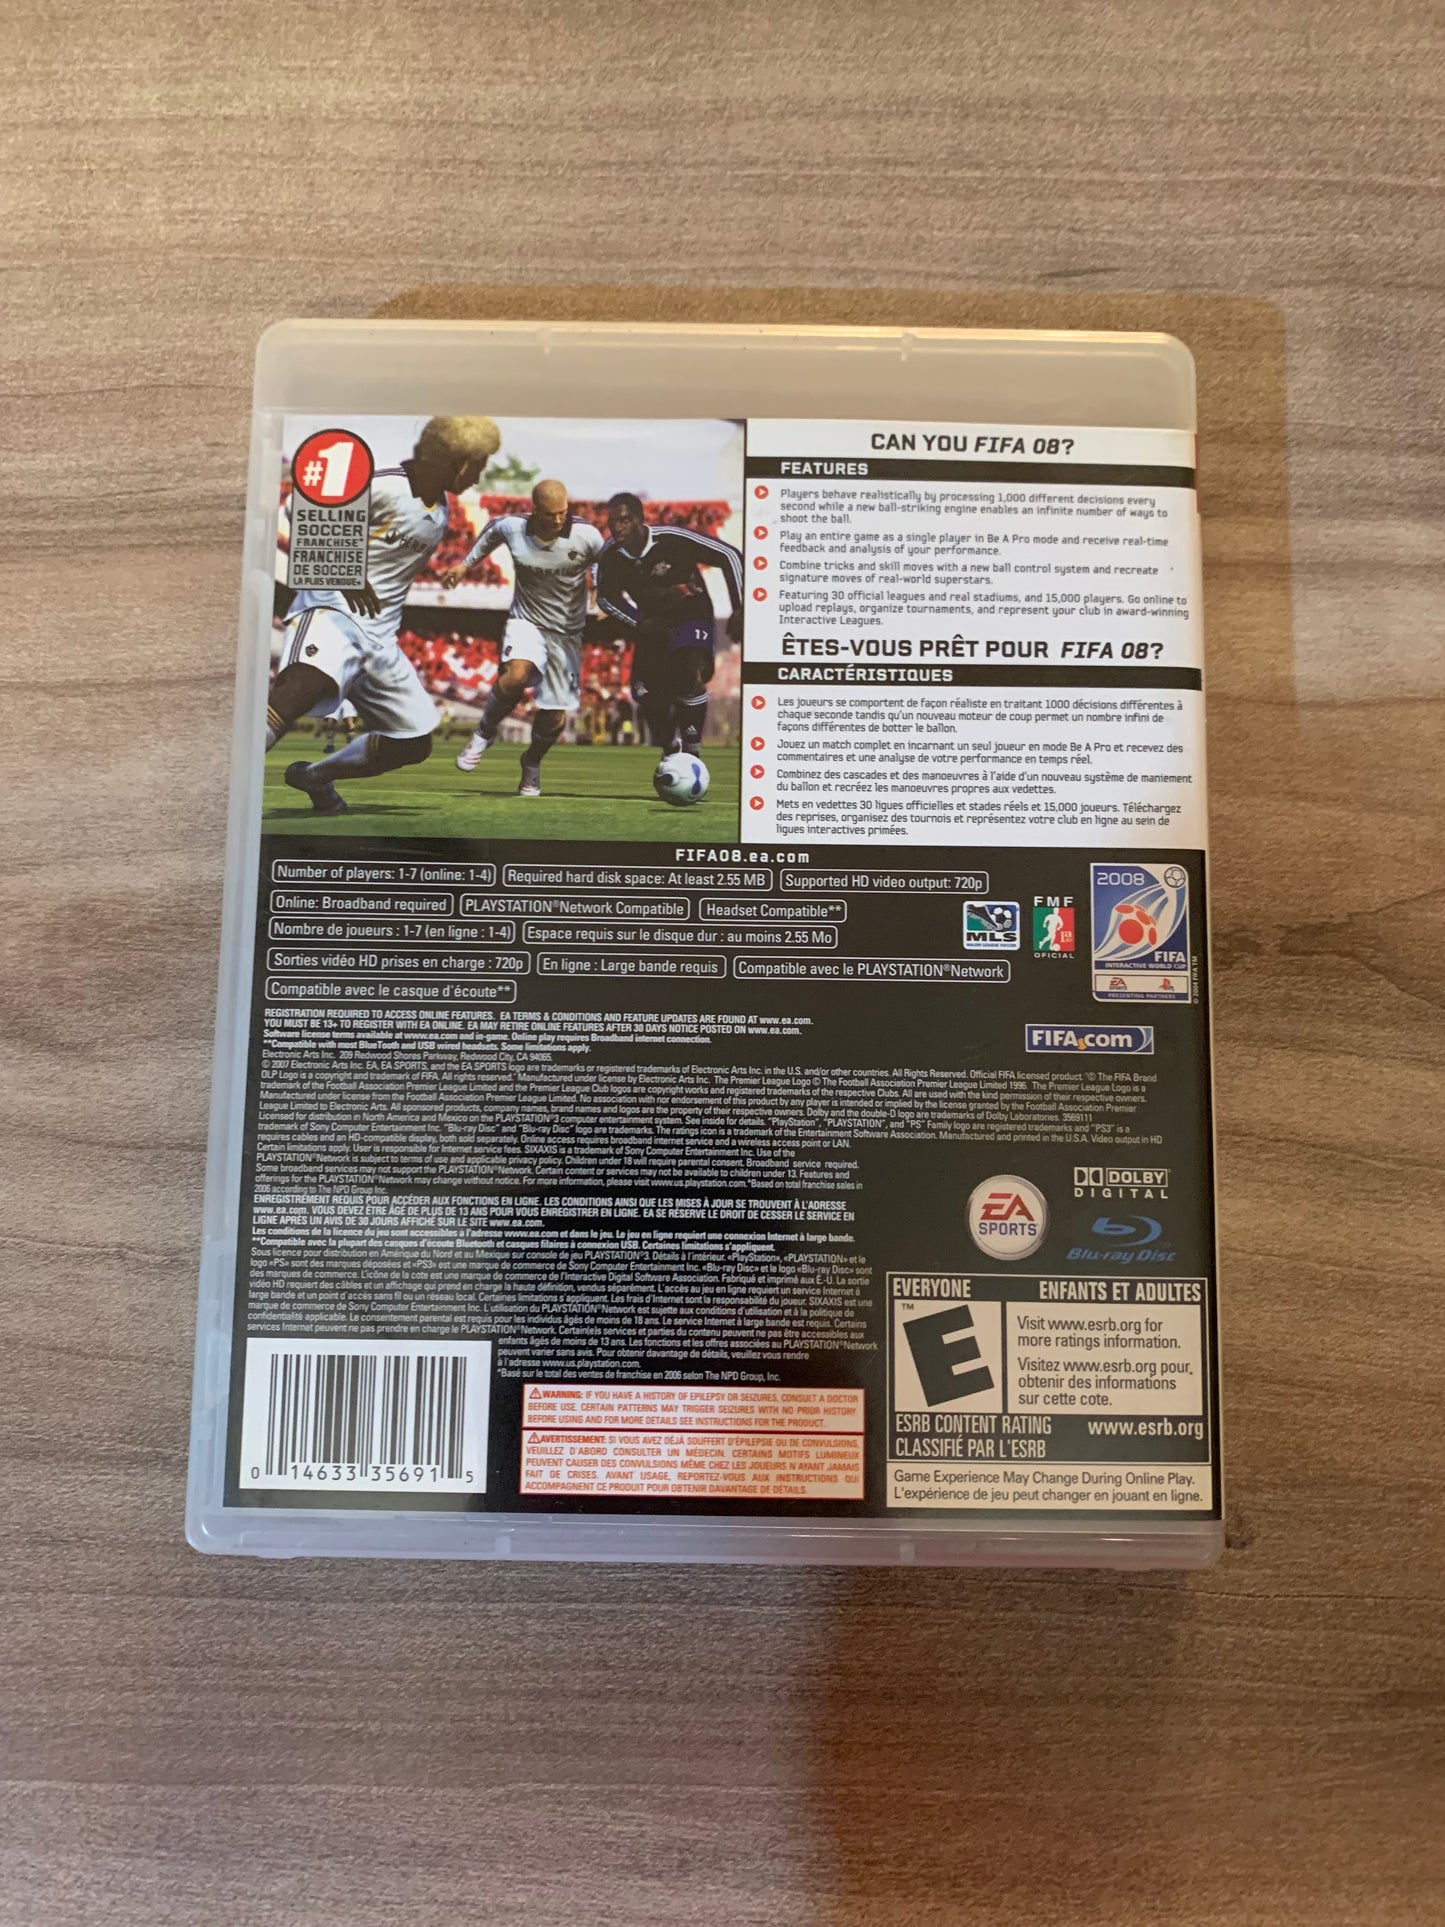 SONY PLAYSTATiON 3 [PS3] | FIFA SOCCER 08